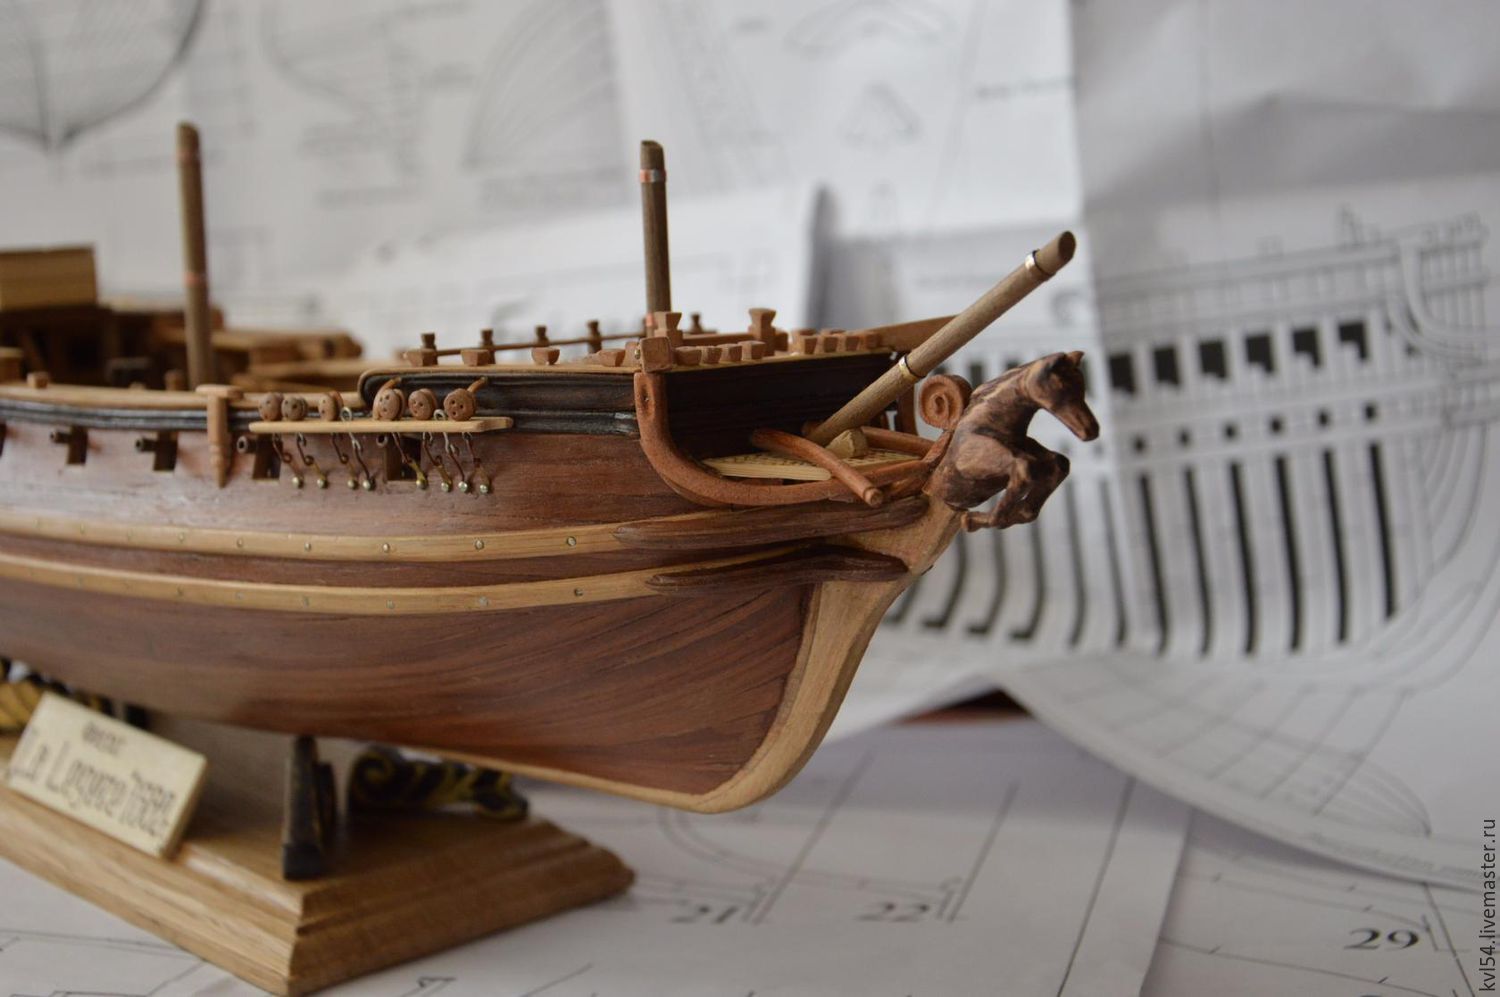 Магазины сборных моделей кораблей. Судомоделирование из древесины. Детали для модели кораболя Мамоли. Макеты корабля из дерева в интерьере комнаты. Двигатель для модели корабля из магнитов.